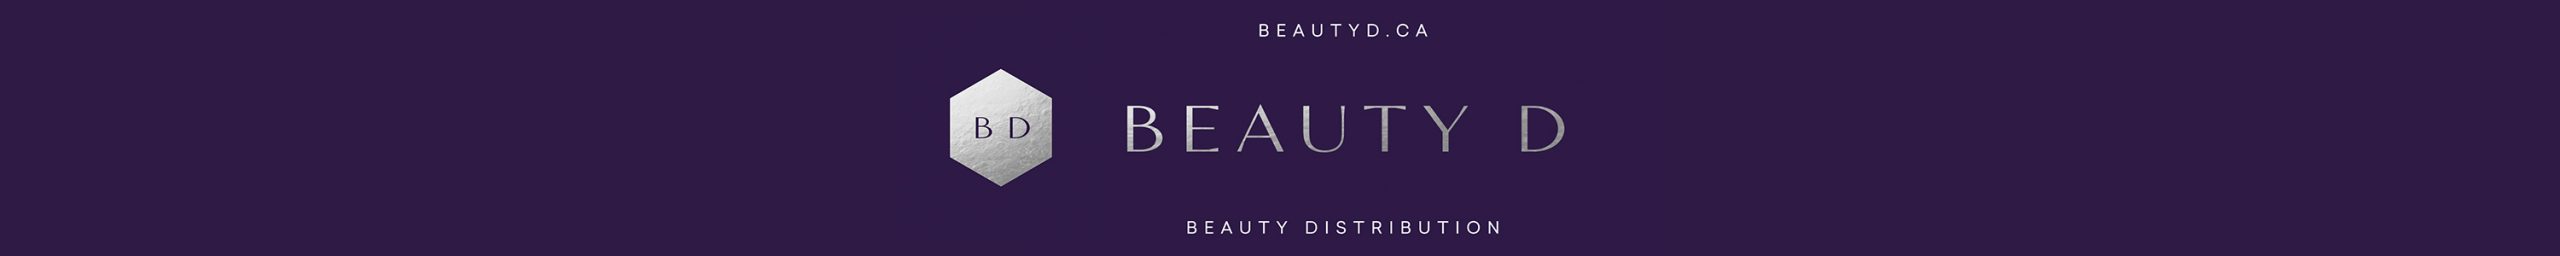 BEAUTY D - Beauty Distribution